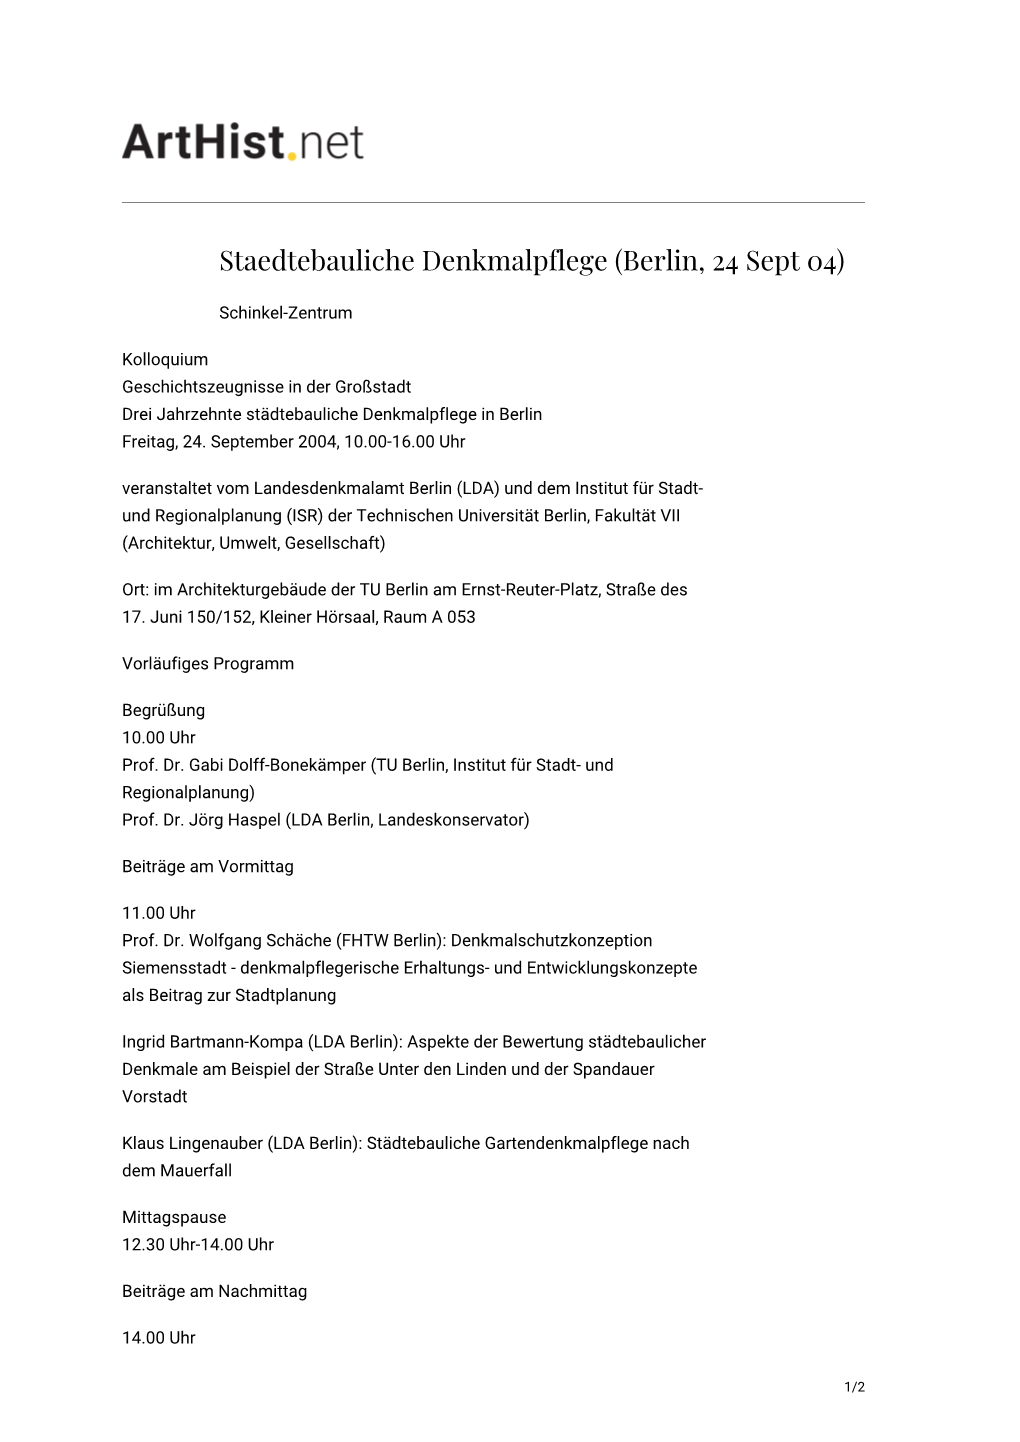 Staedtebauliche Denkmalpflege (Berlin, 24 Sept 04)